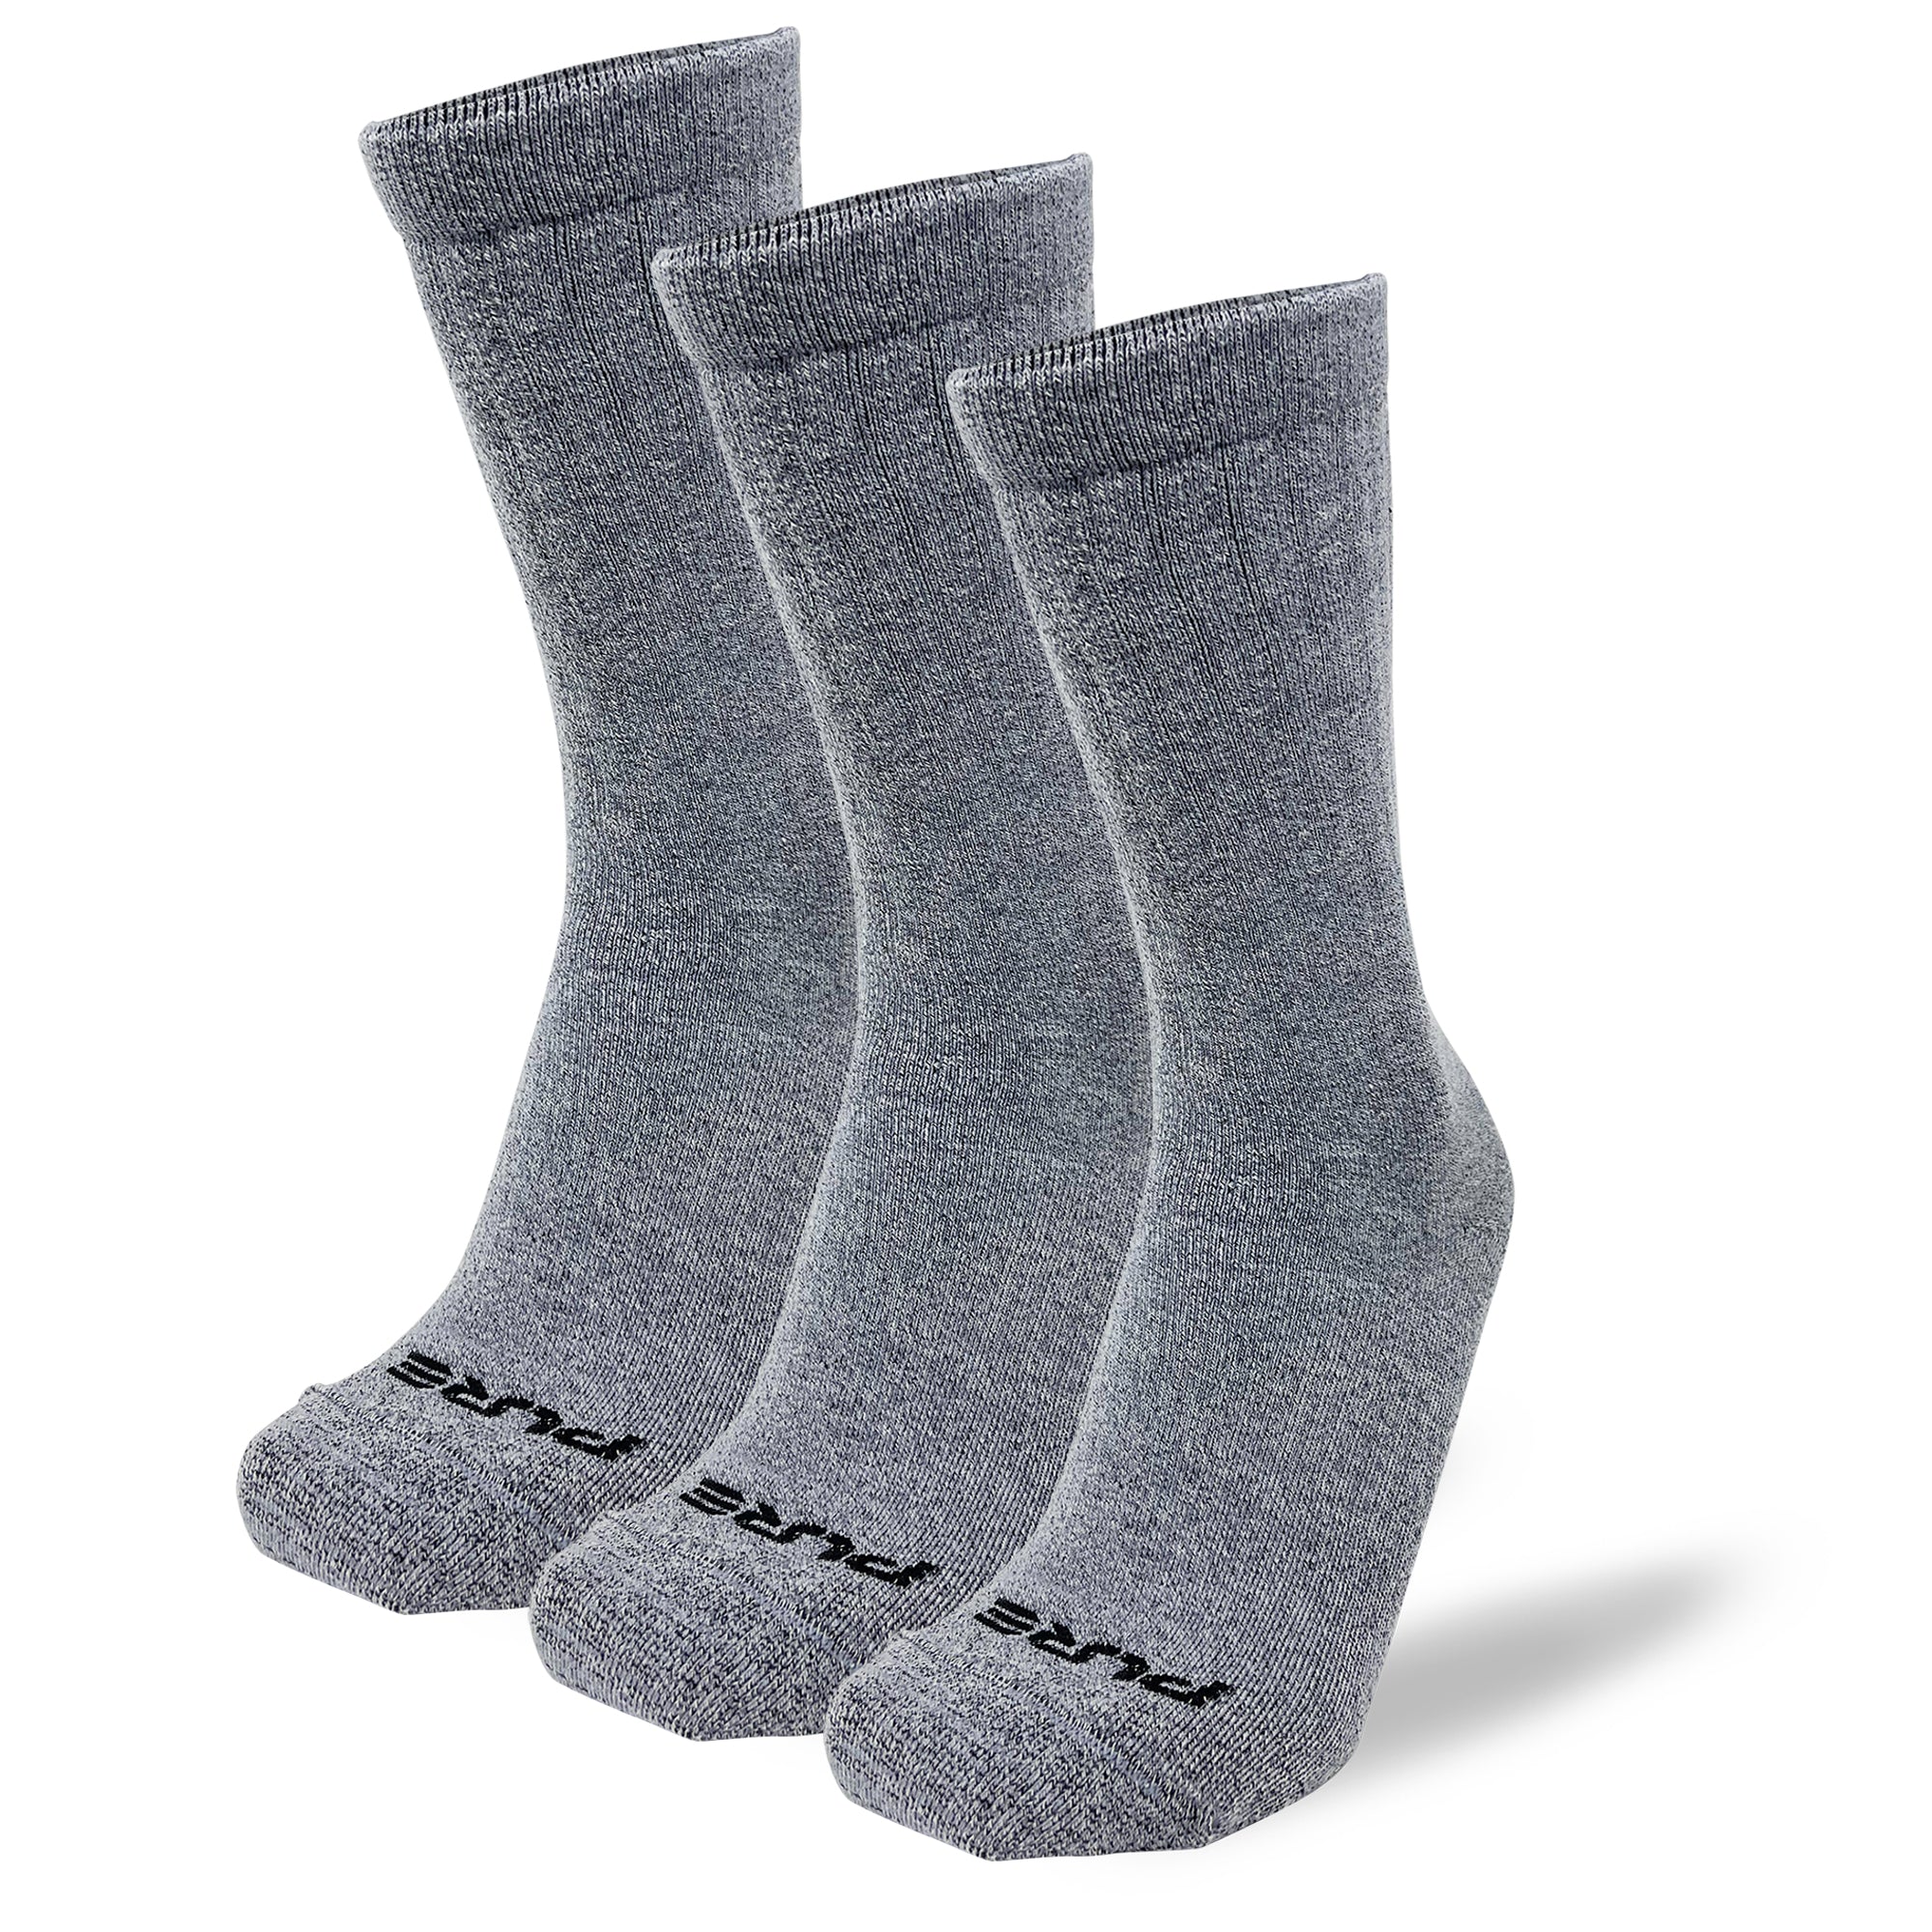 Merino Wool Hiking Boot Socks